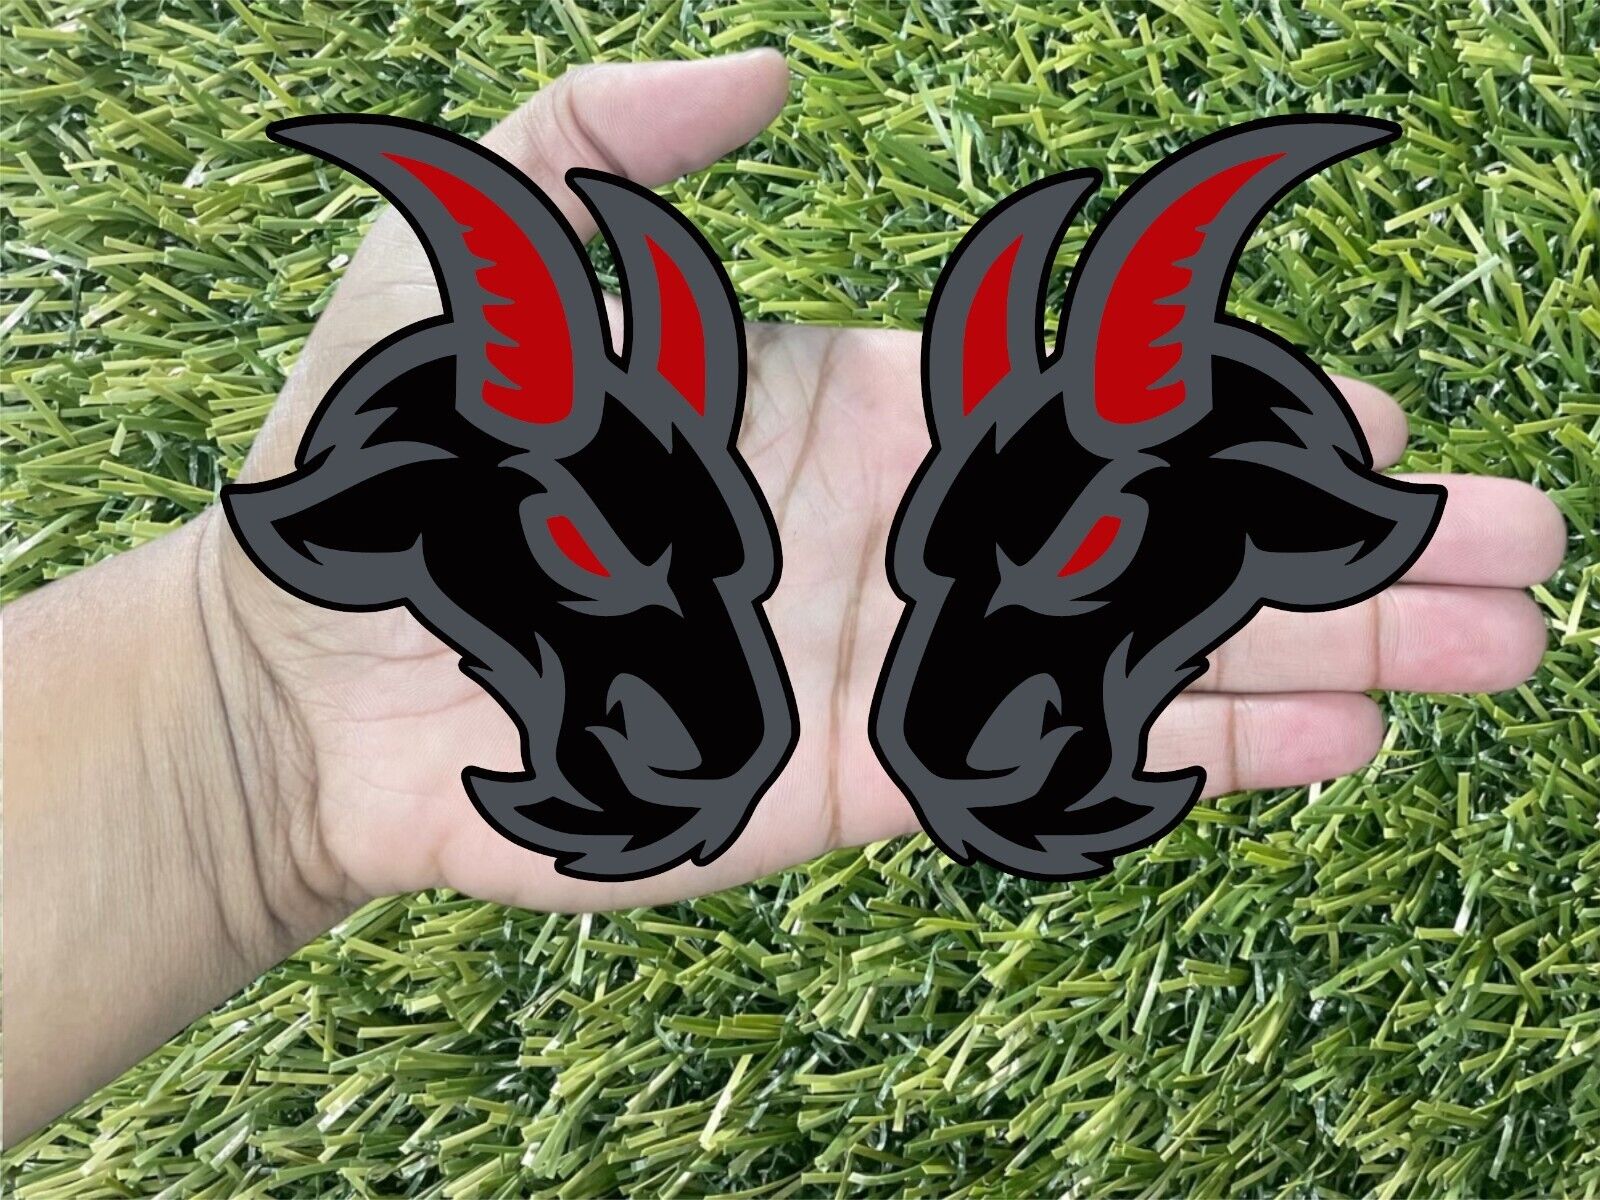 Angry Goat Matte Black / Black Red Eye & Horn Emblem Badge Car or Truck 2 Badge